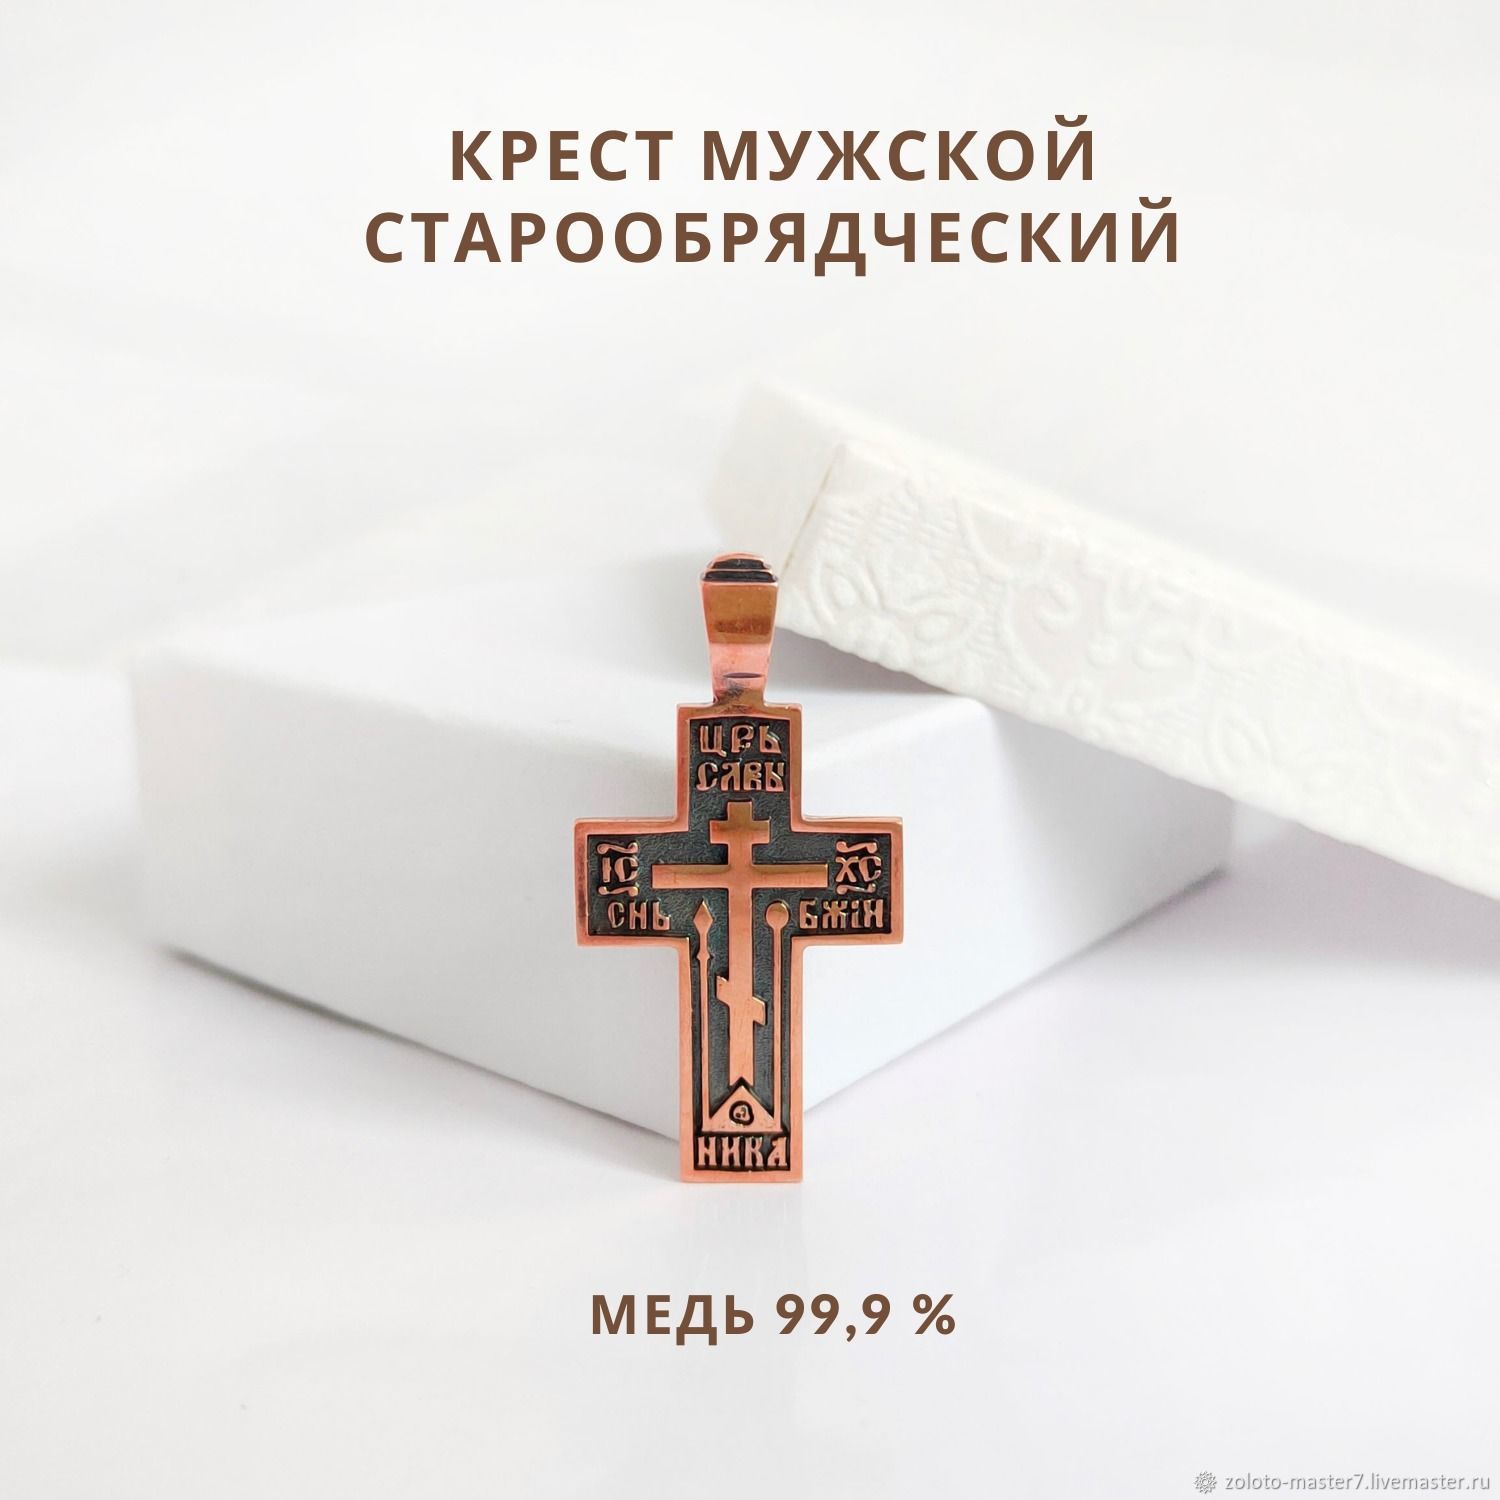 Значение и особенности символики креста староверов